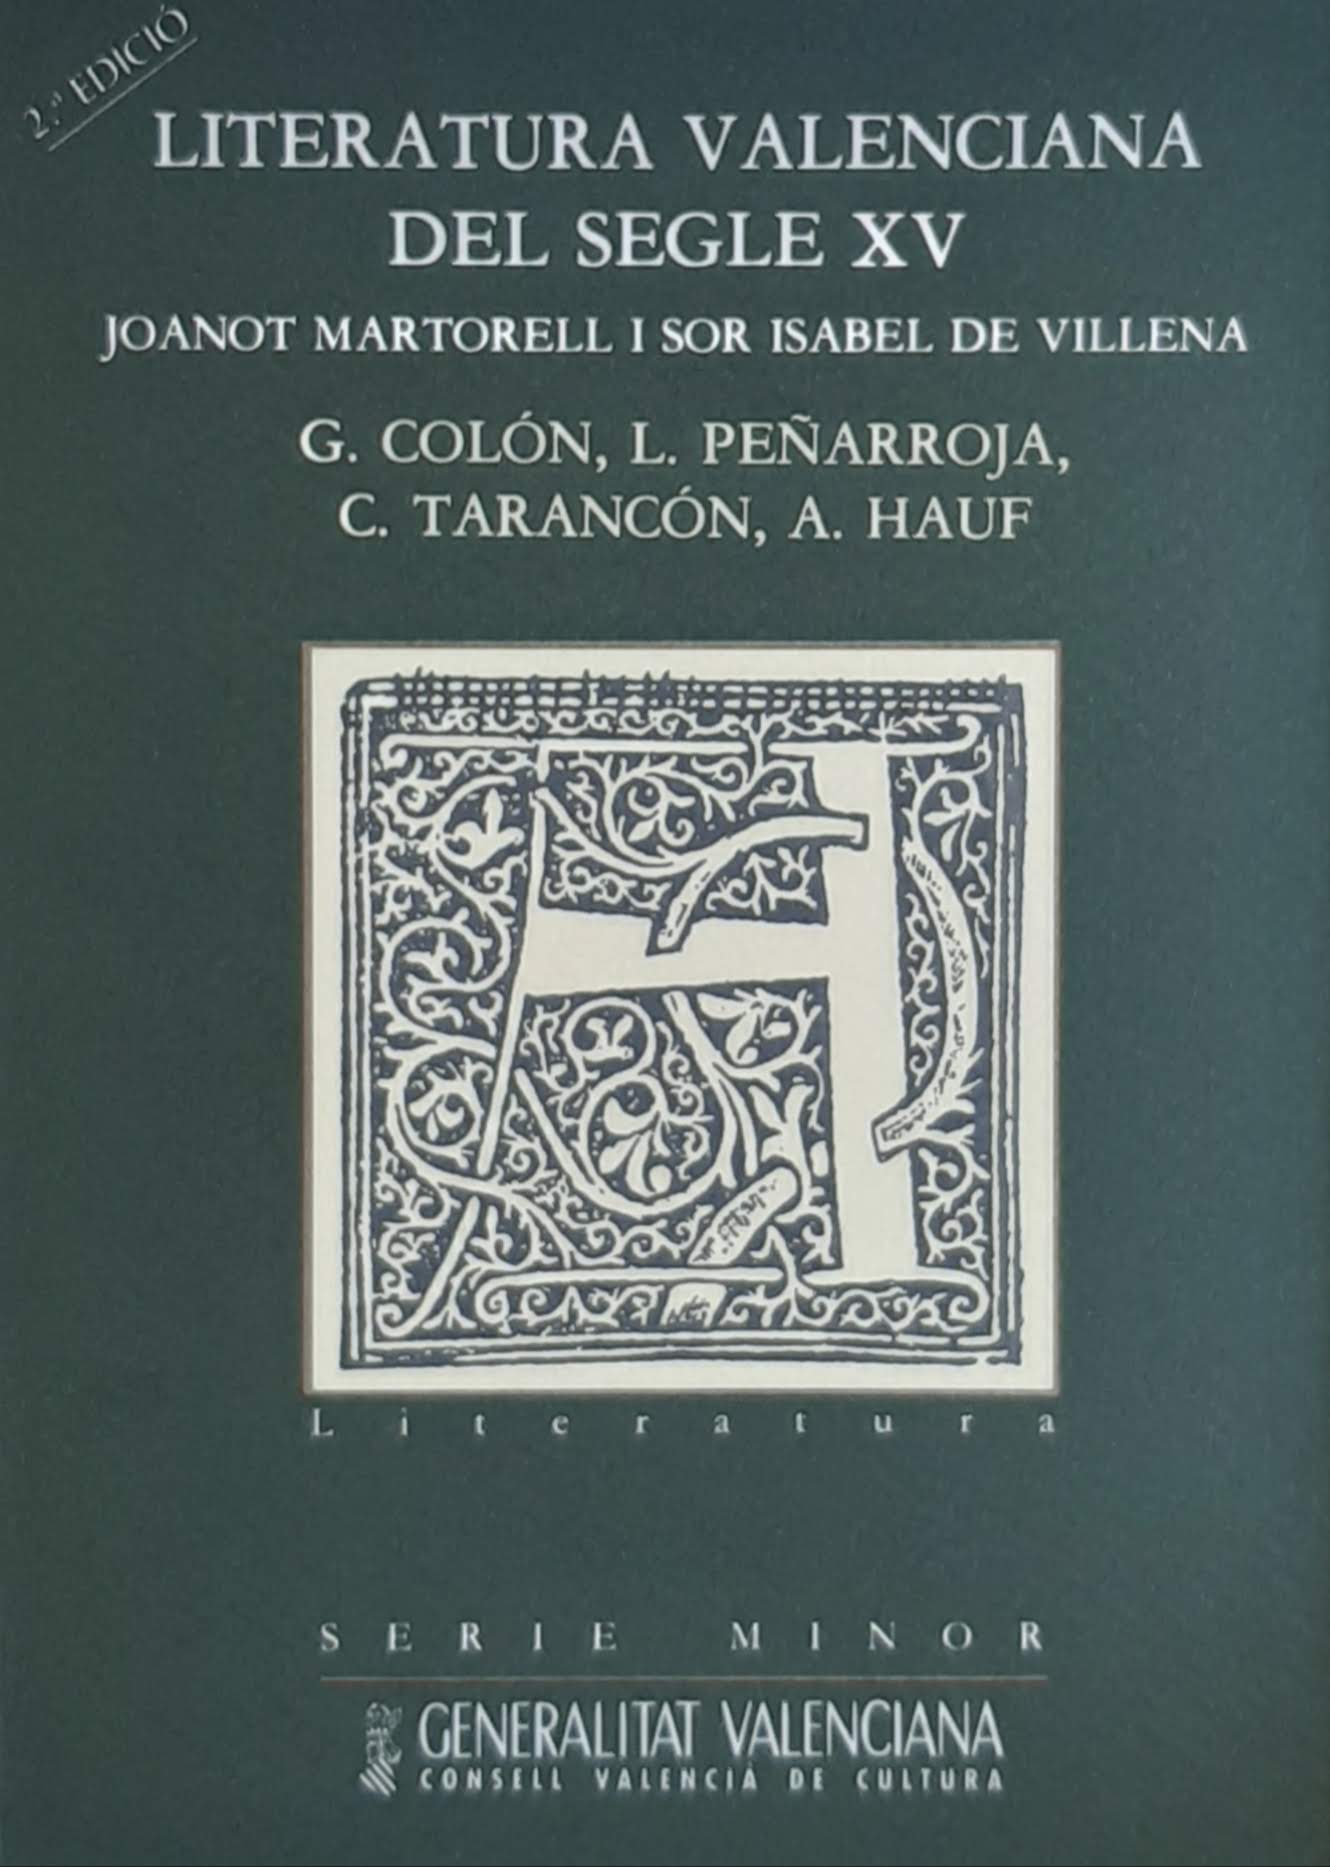 Literatura valenciana del segle XV. Joanot Martorell i Sor Isabel de Villena. Nº 6. Serie Minor. 2a Edició